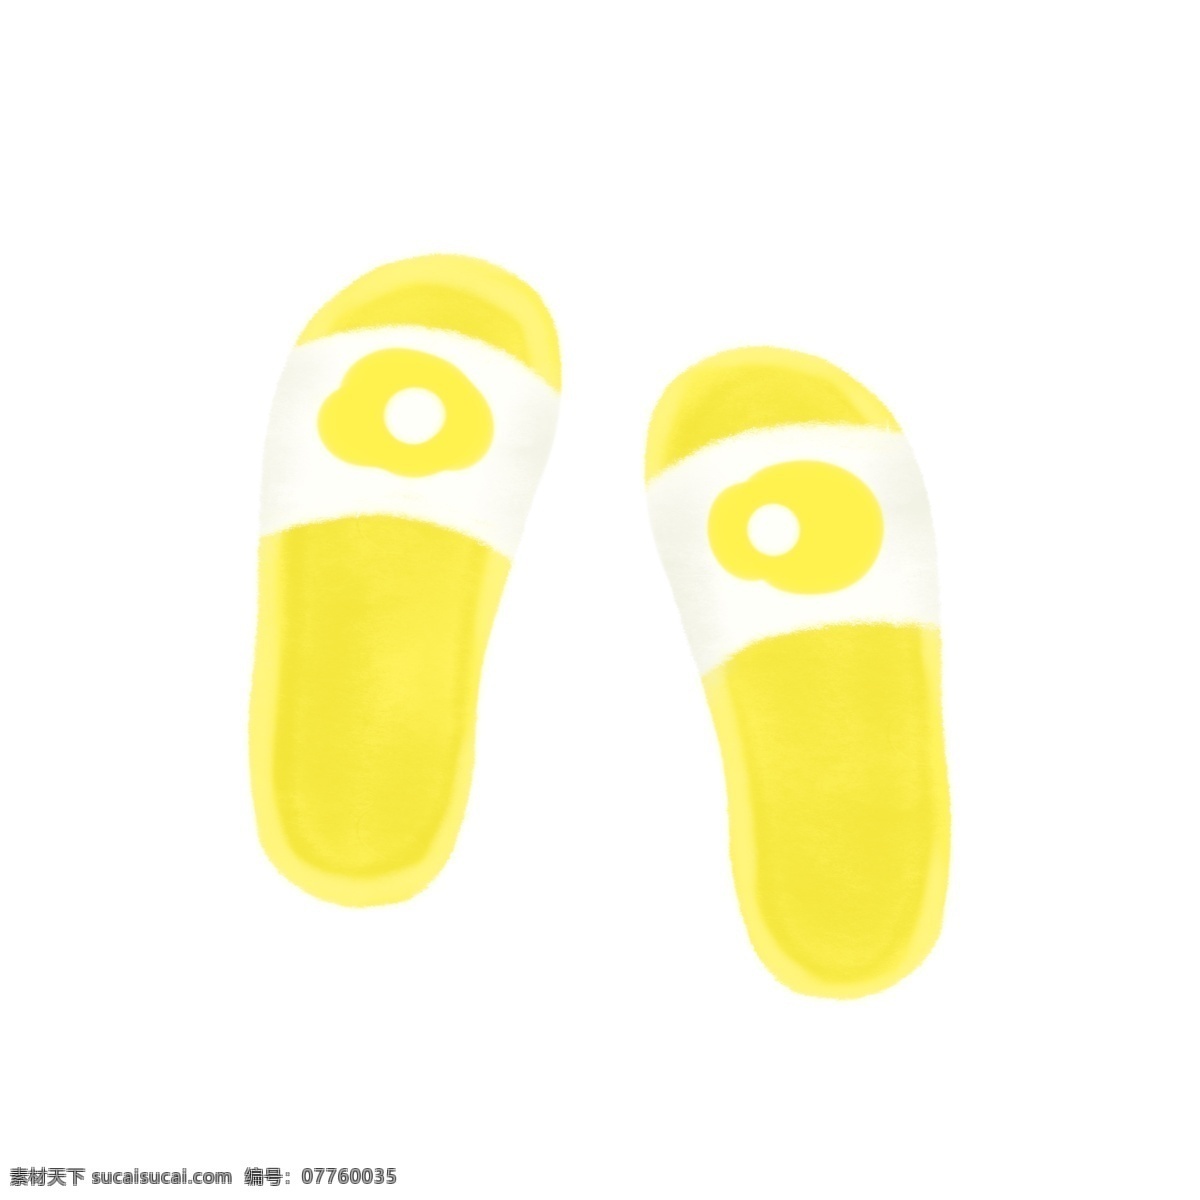 拖鞋凉鞋黄色 拖鞋 凉鞋 黄色 可爱 清新 卡通